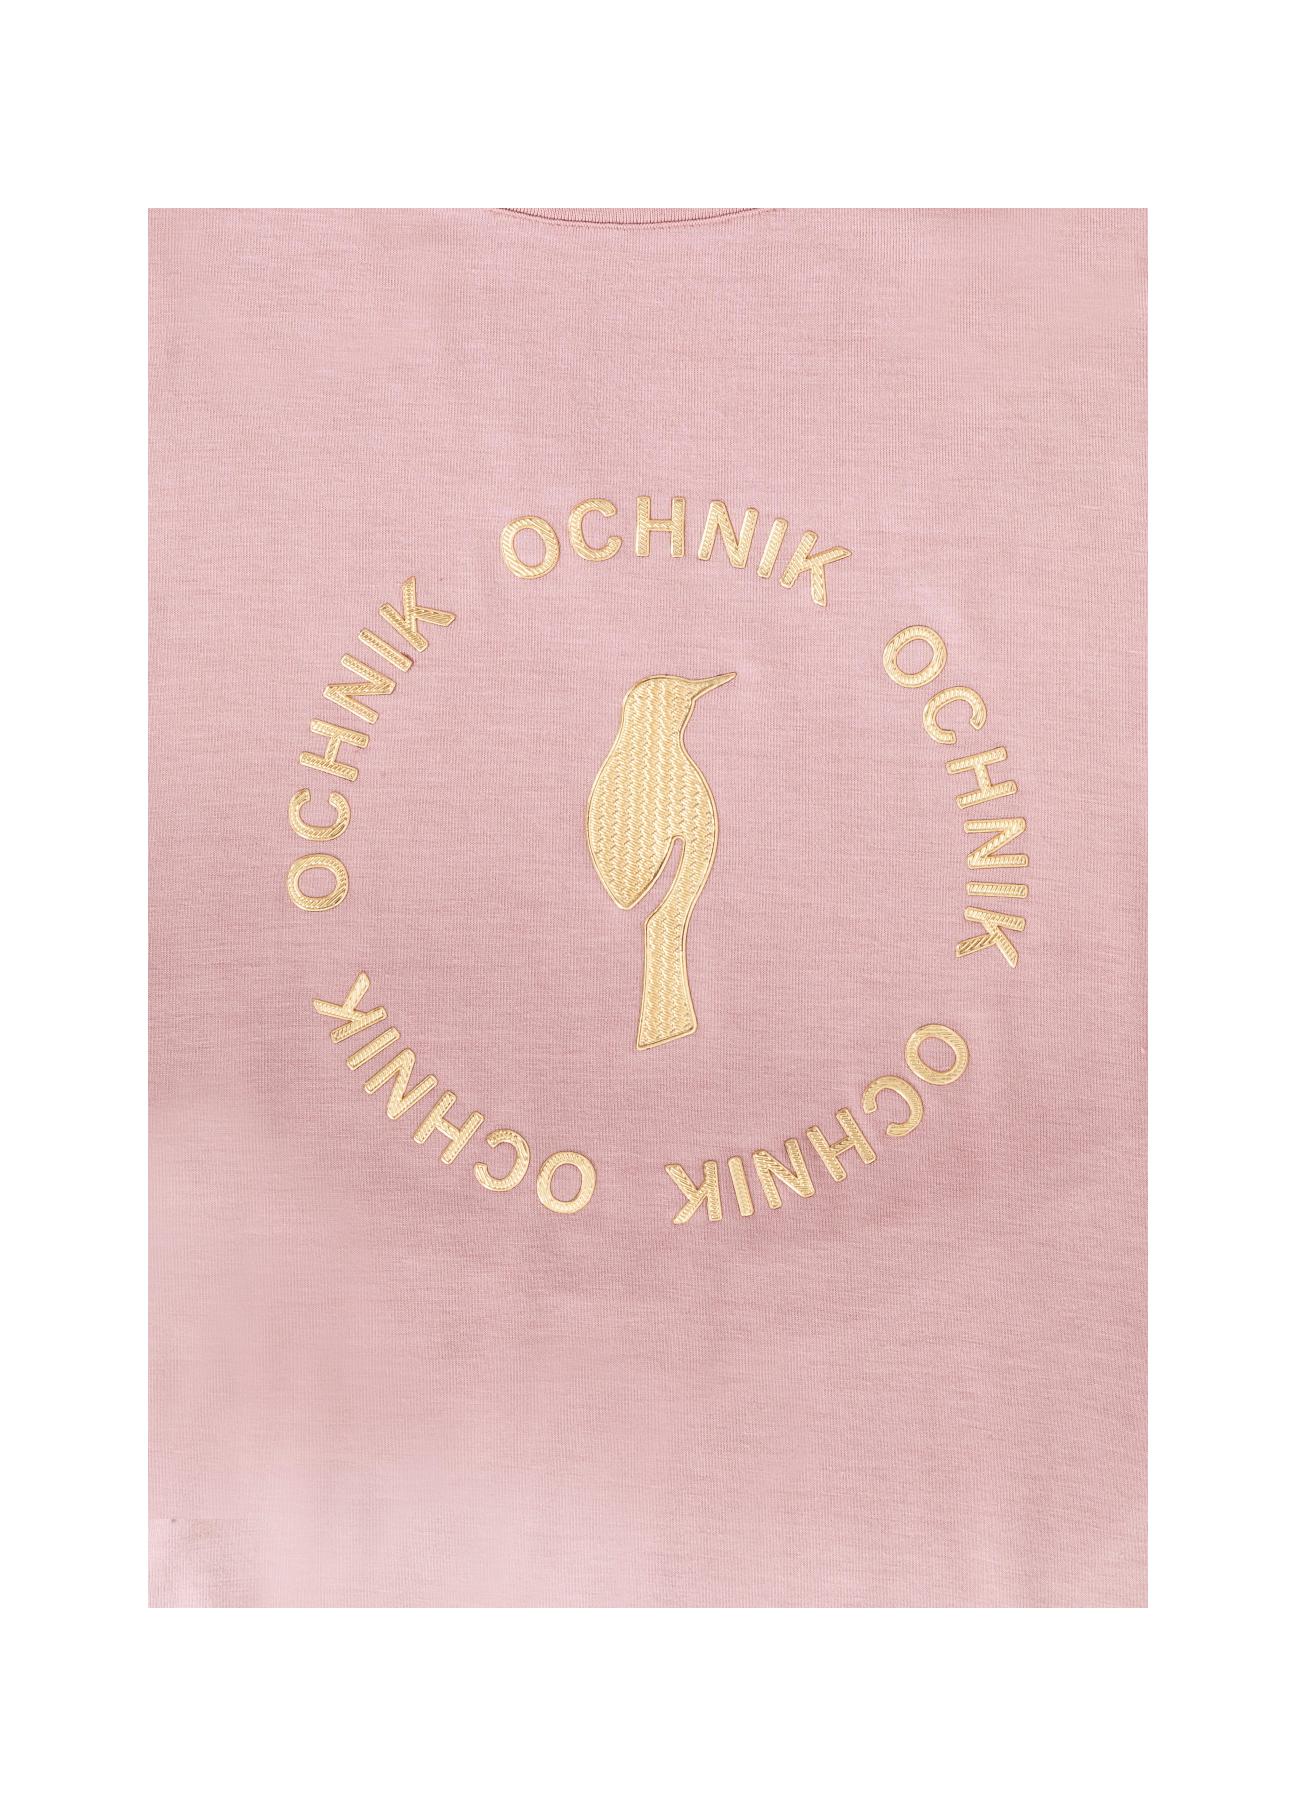 Różowy T-shirt damski z logo OCHNIK TSHDT-0081-34(Z21)